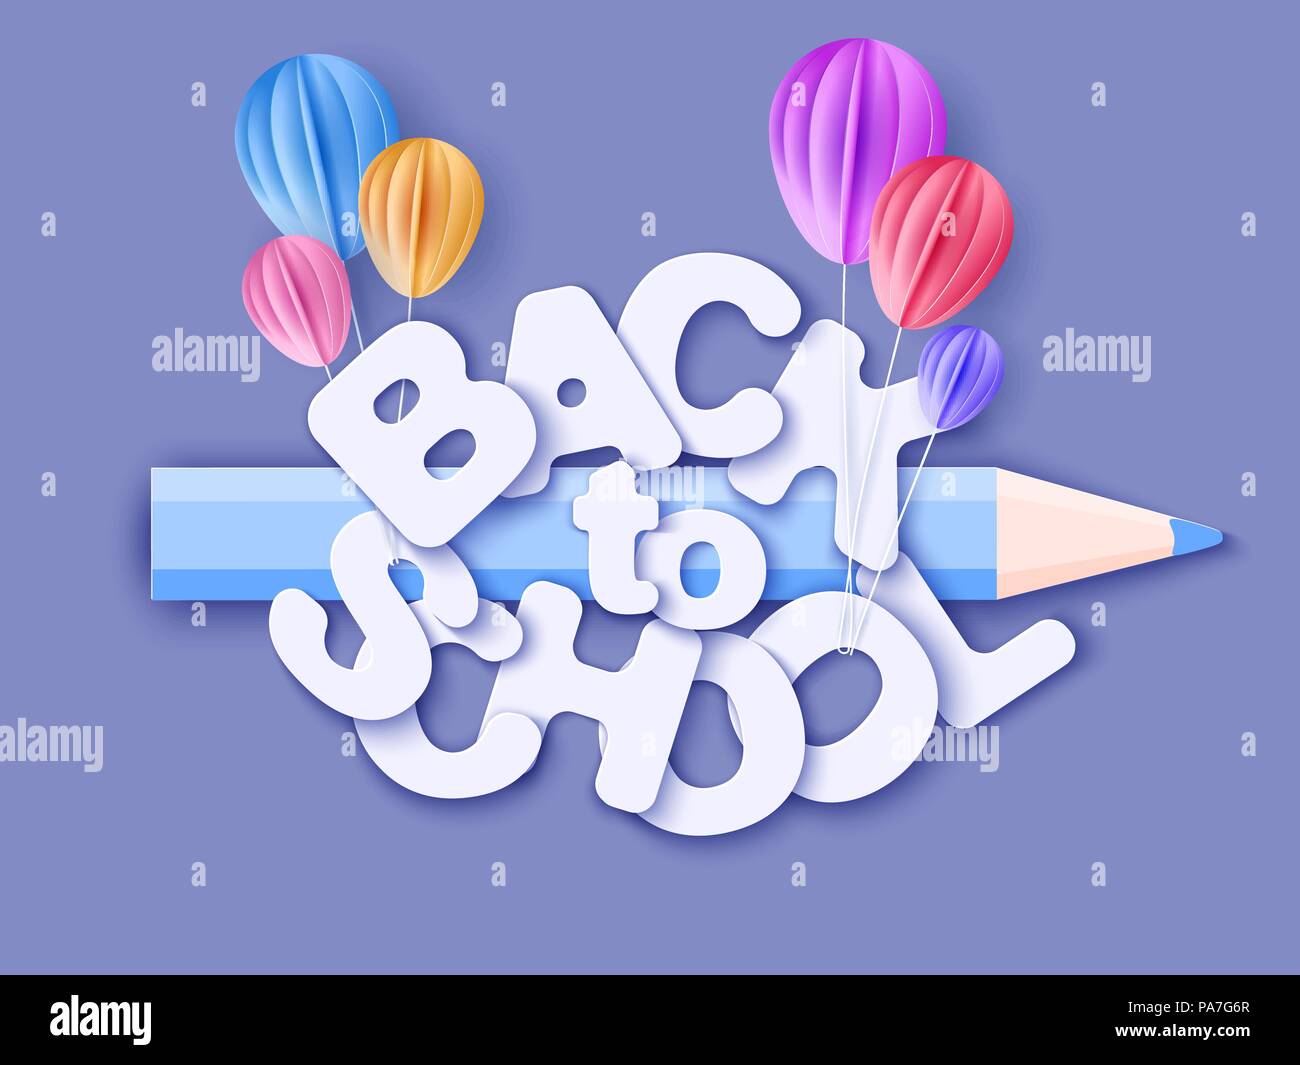 Zurück zu Schule 1. September Banner mit Luftballons. Vector Illustration. Papier schneiden Stil. Stock Vektor